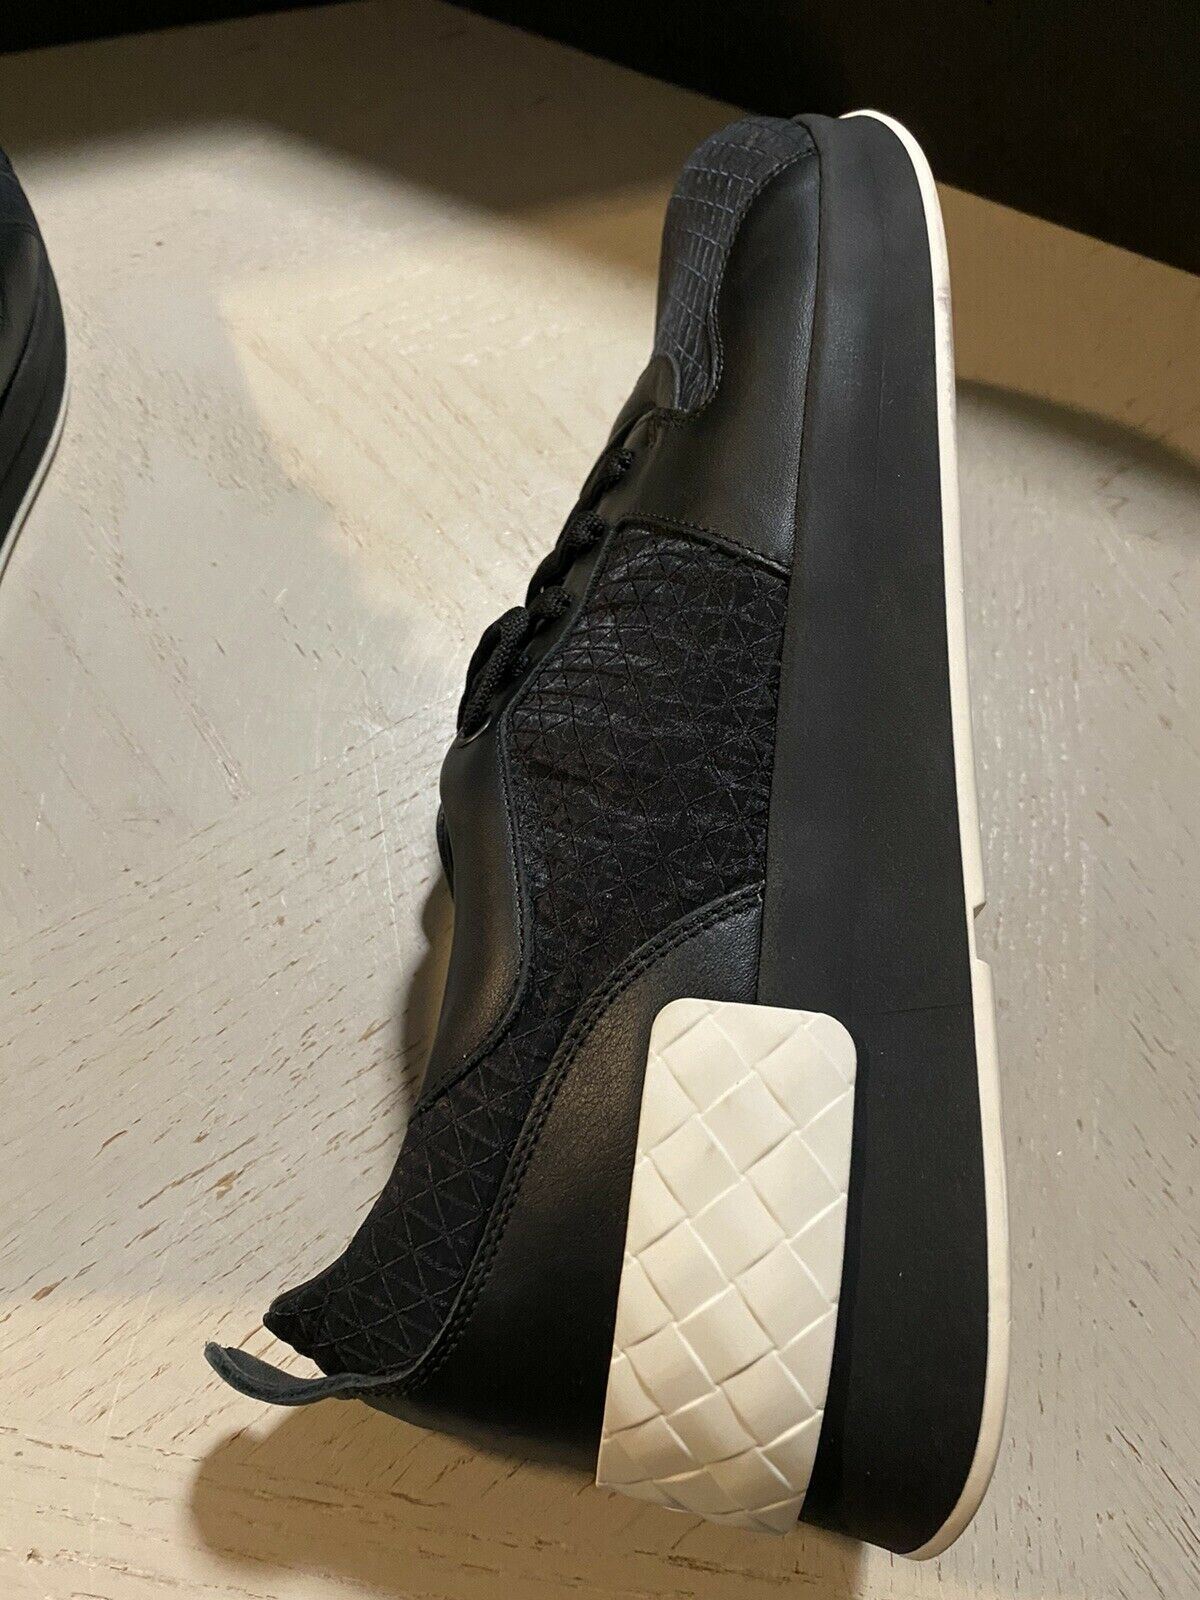 NIB $690 Bottega Veneta Men Textile/Leather Sneakers Shoes Black 10 US ( 43 Eu )